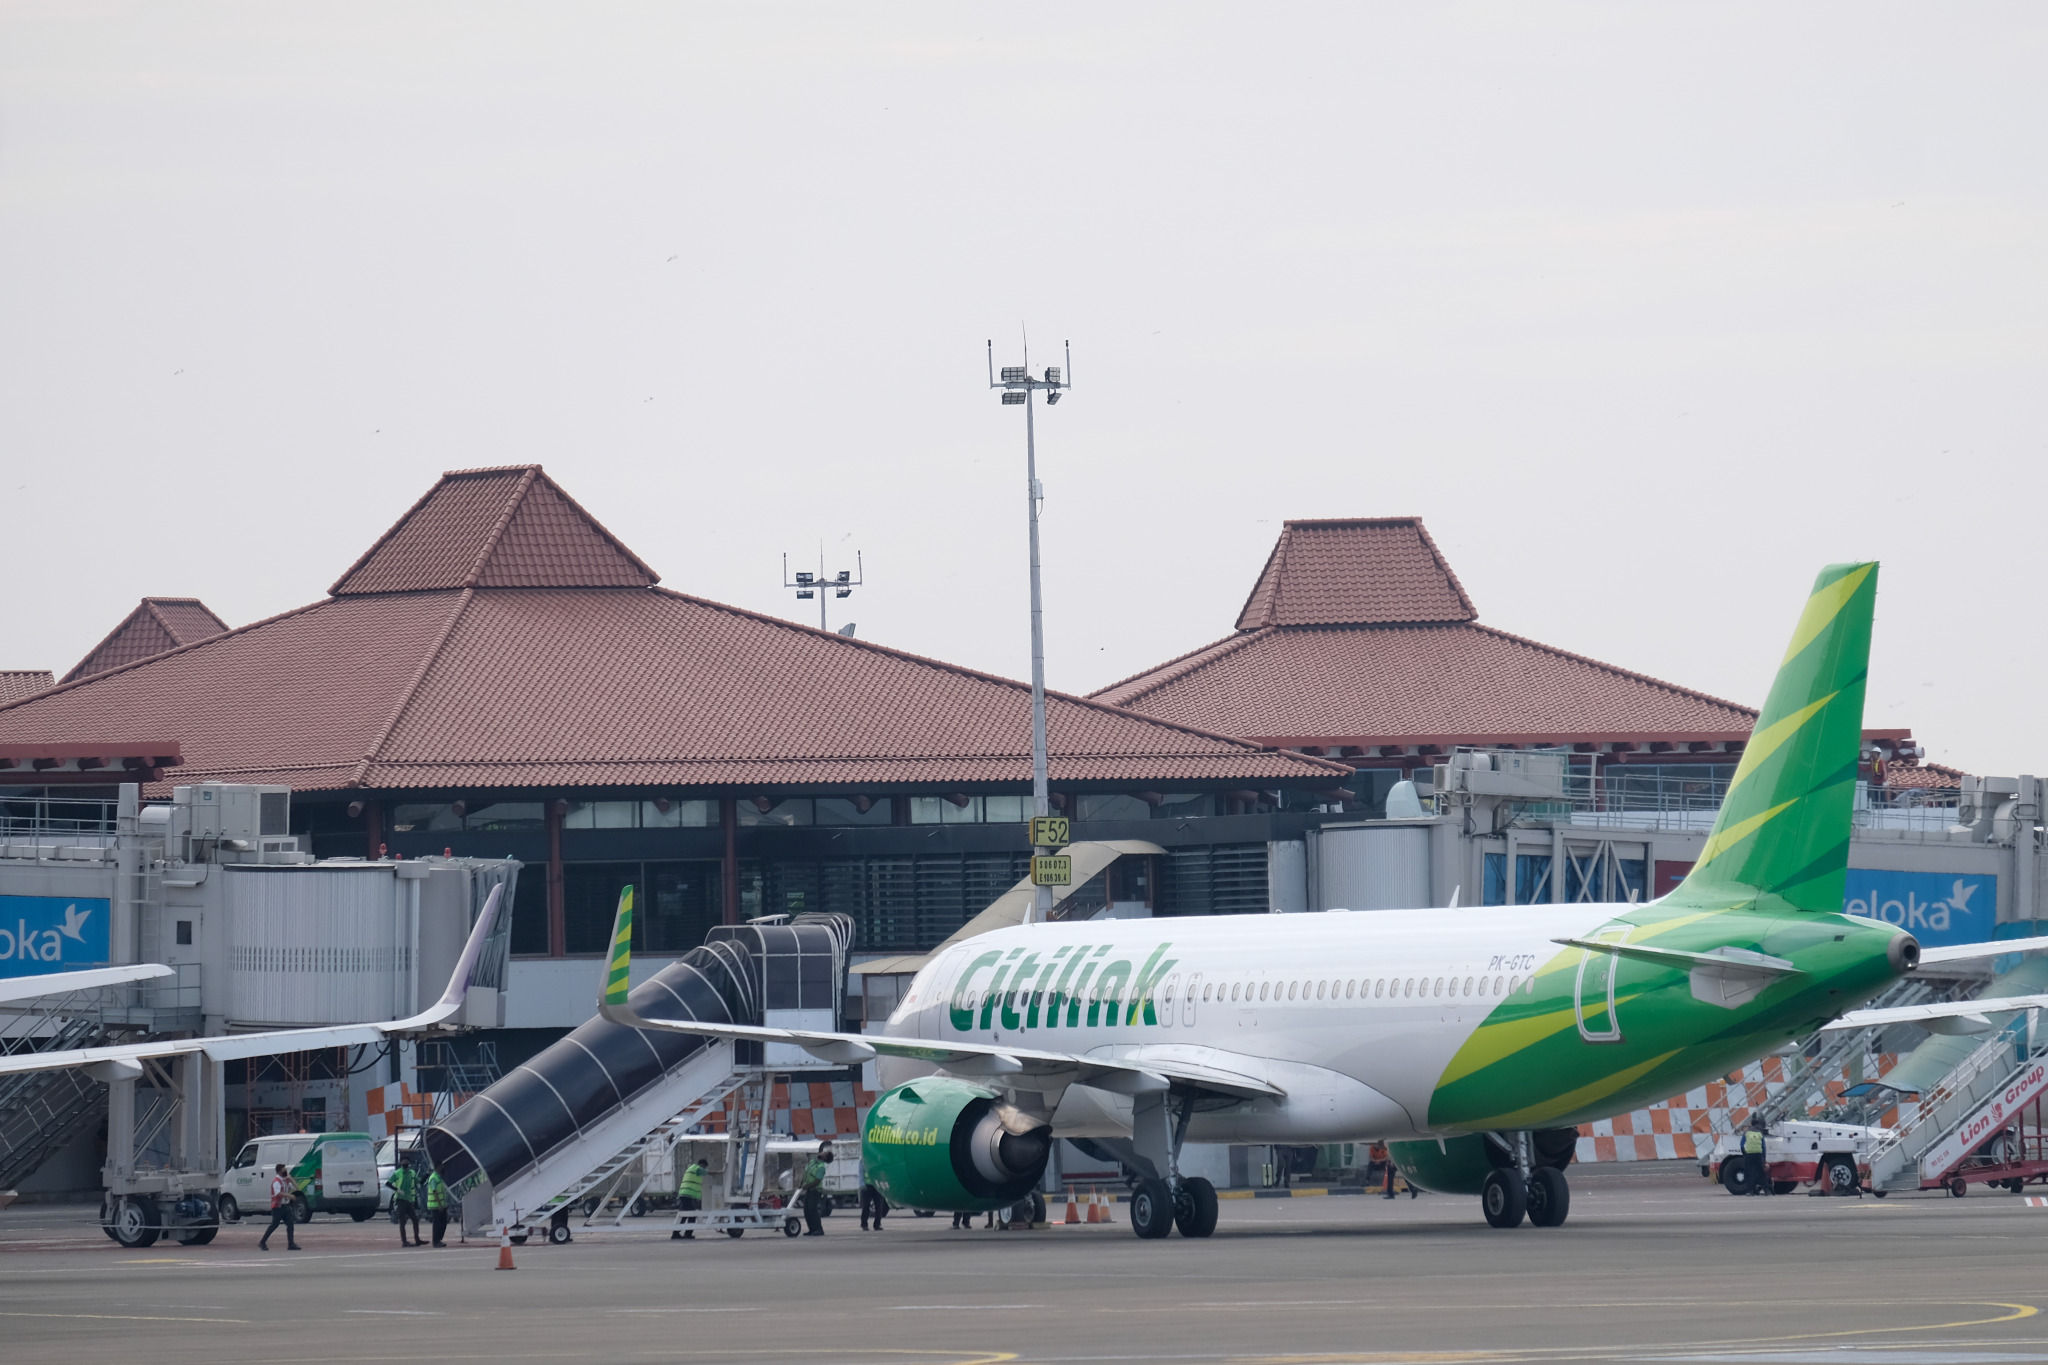 <p>Maskapai penerbangan komersil Citilink tampak terparkir di Bandara Soekarno Hatta, Tangerang, Banten, Jum&#8217;at, 3 Juni 2020. Foto: Ismail Pohan/TrenAsia</p>
